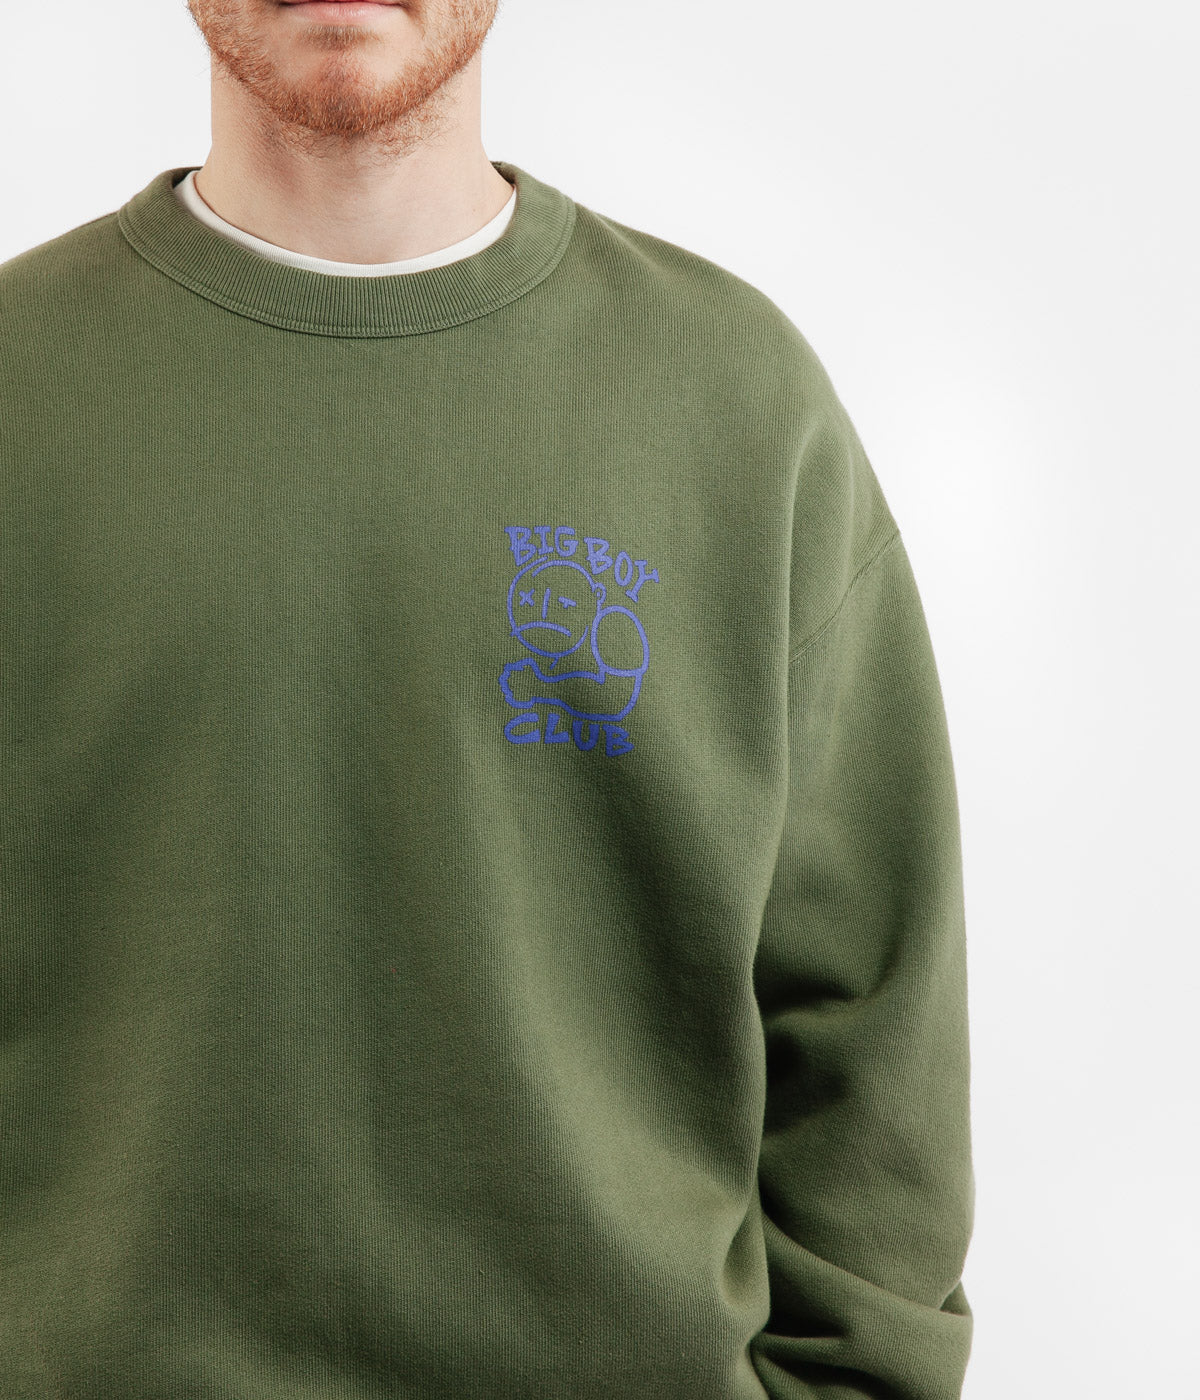 Polar Big Boy Club Crewneck Sweatshirt - Army Green | Flatspot